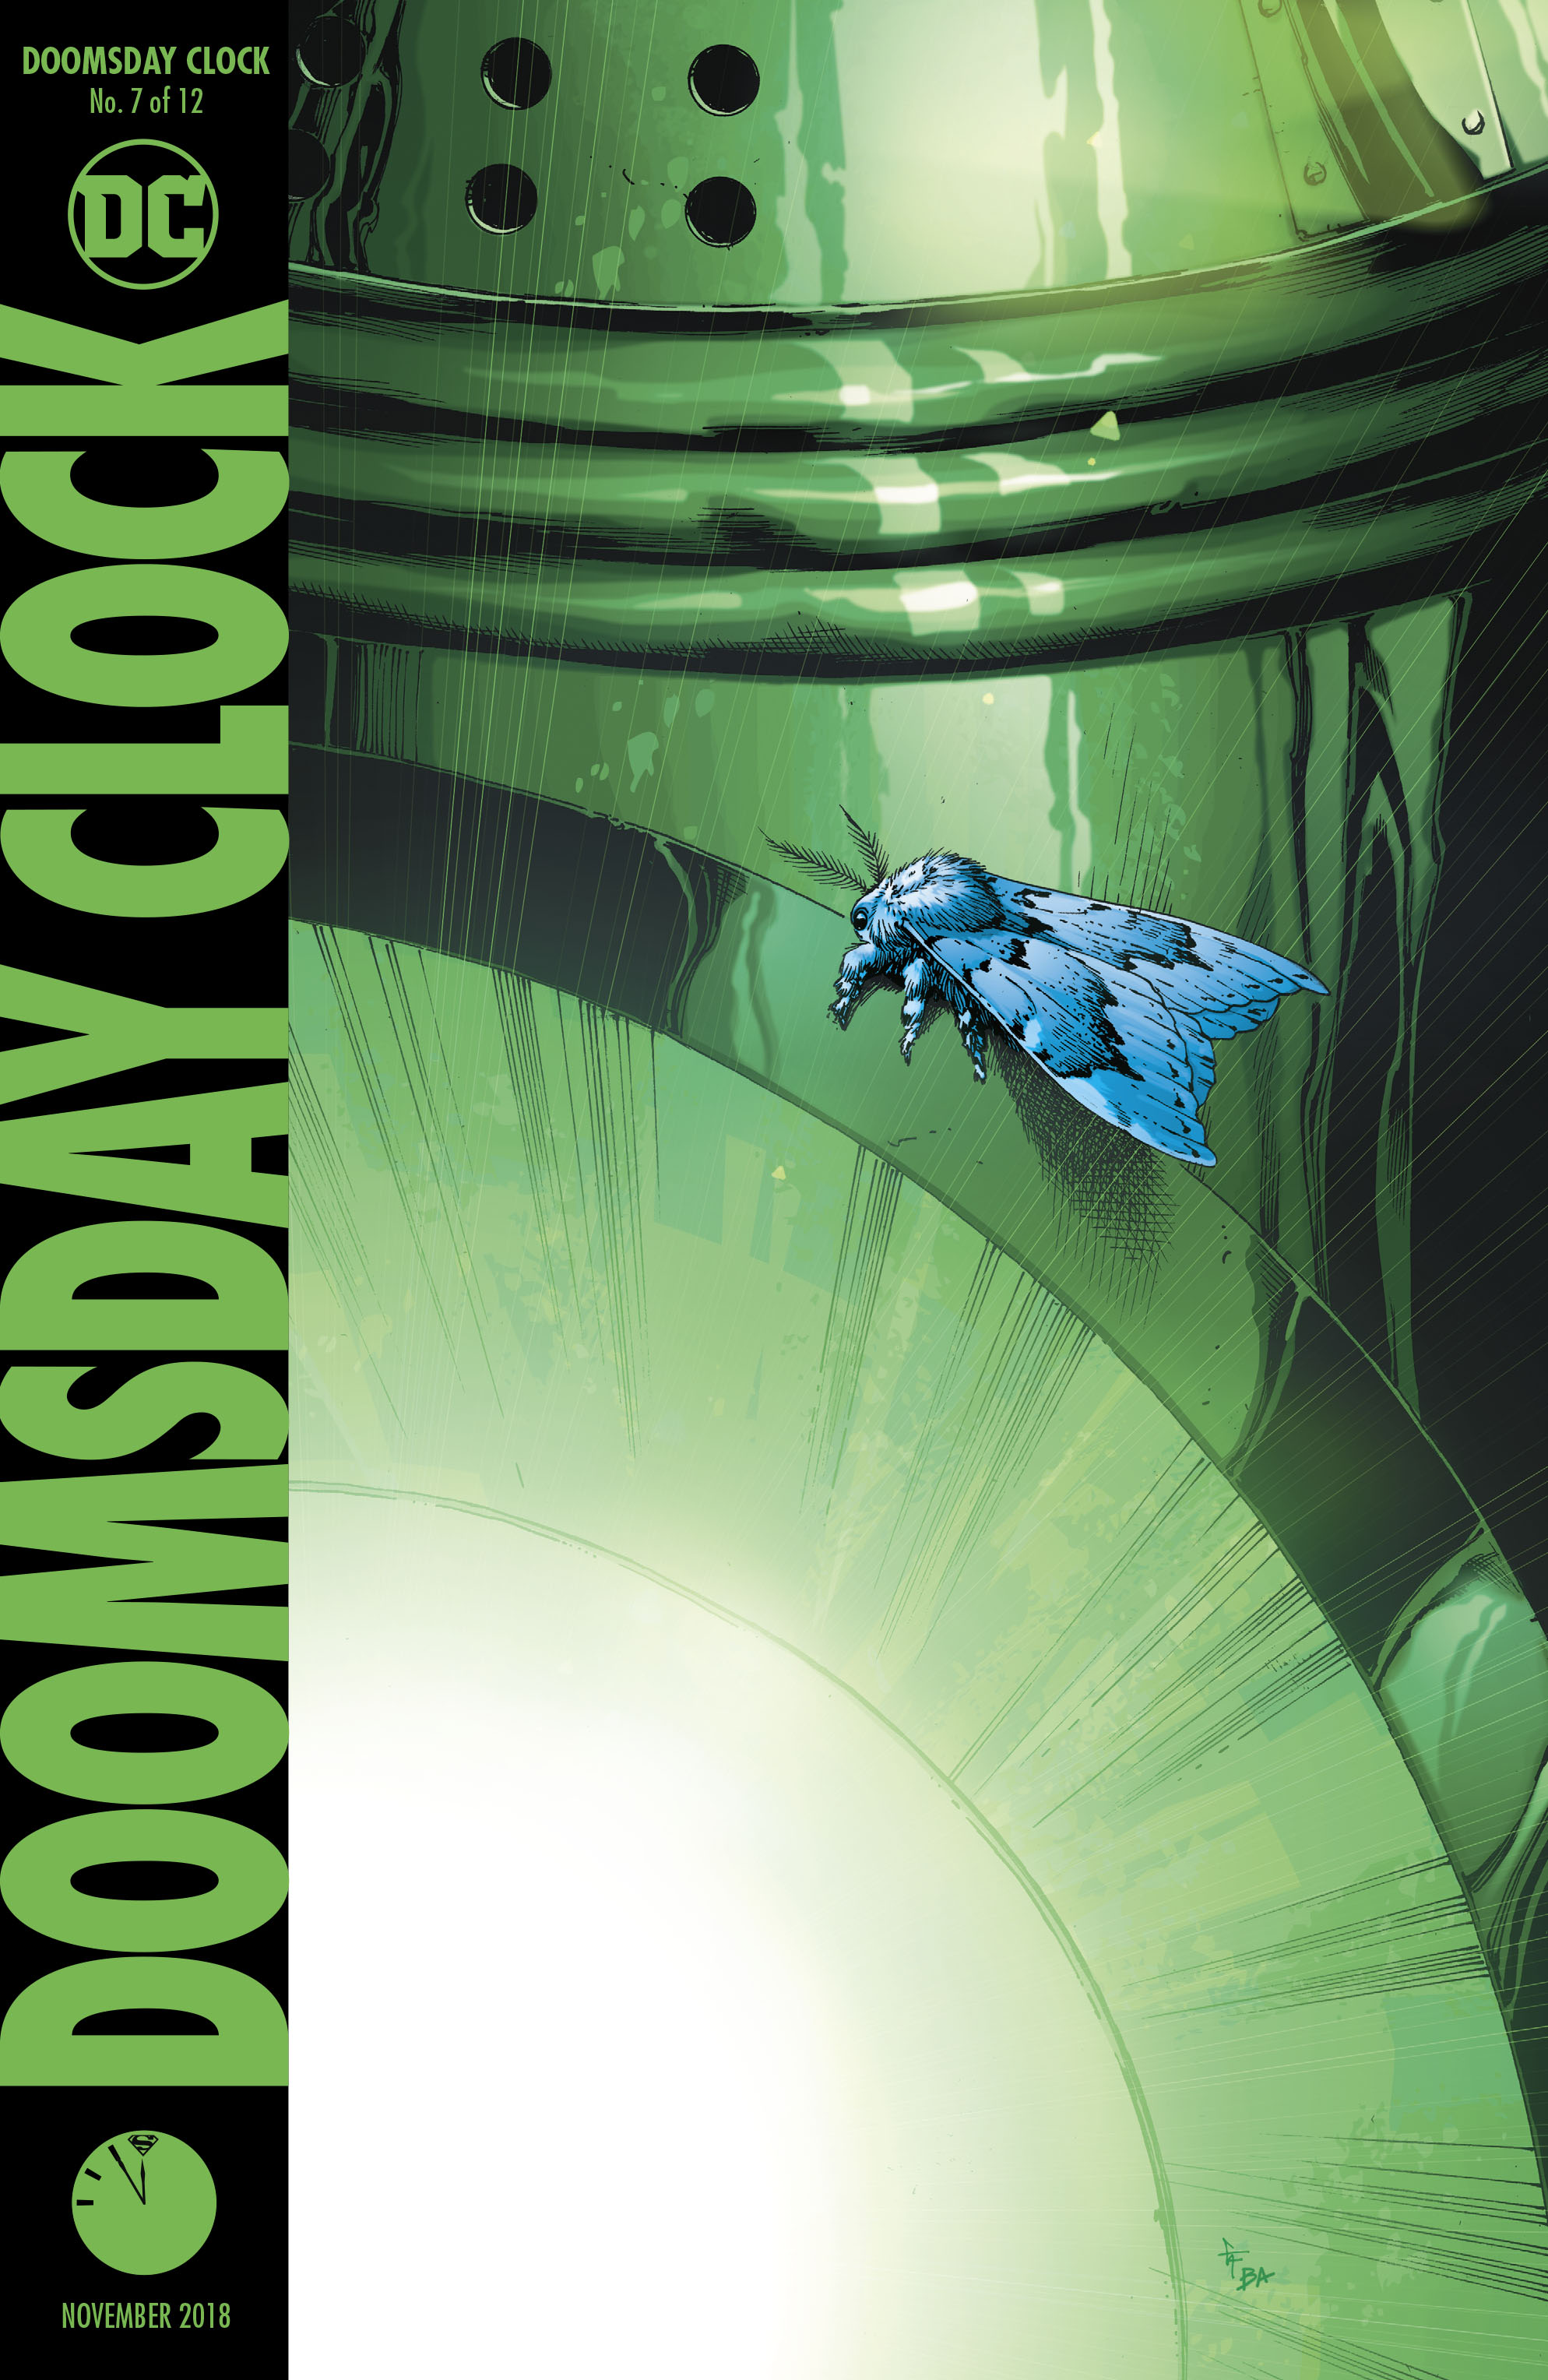 Doomsday Clock Vol 1 7 | DC Database | FANDOM powered by Wikia1988 x 3056